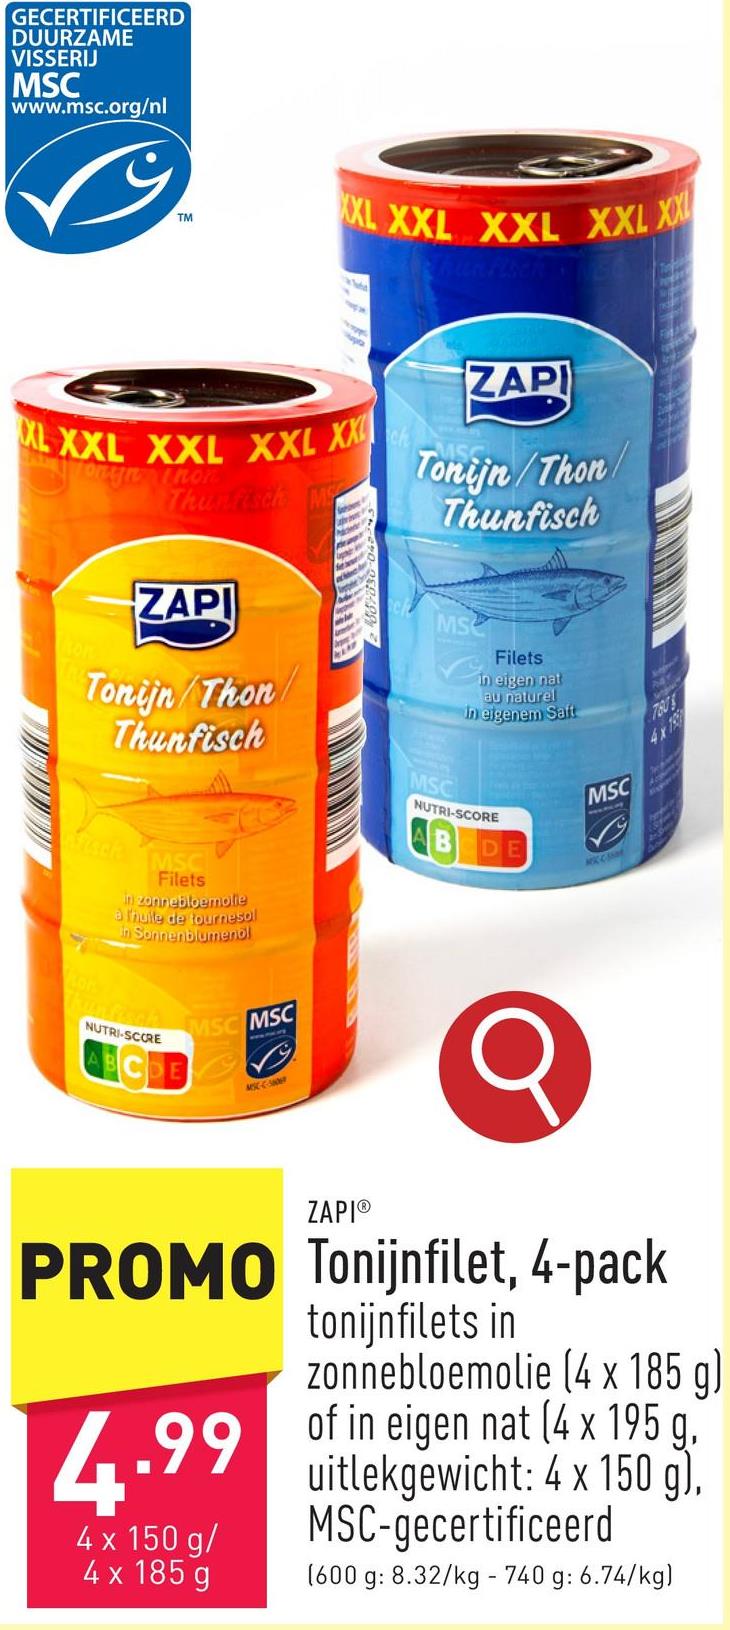 Tonijnfilet, 4-pack keuze uit tonijnfilets in zonnebloemolie (4 x 185 g) en in eigen nat (4 x 195 g, uitlekgewicht: 4 x 150 g), MSC-gecertificeerd